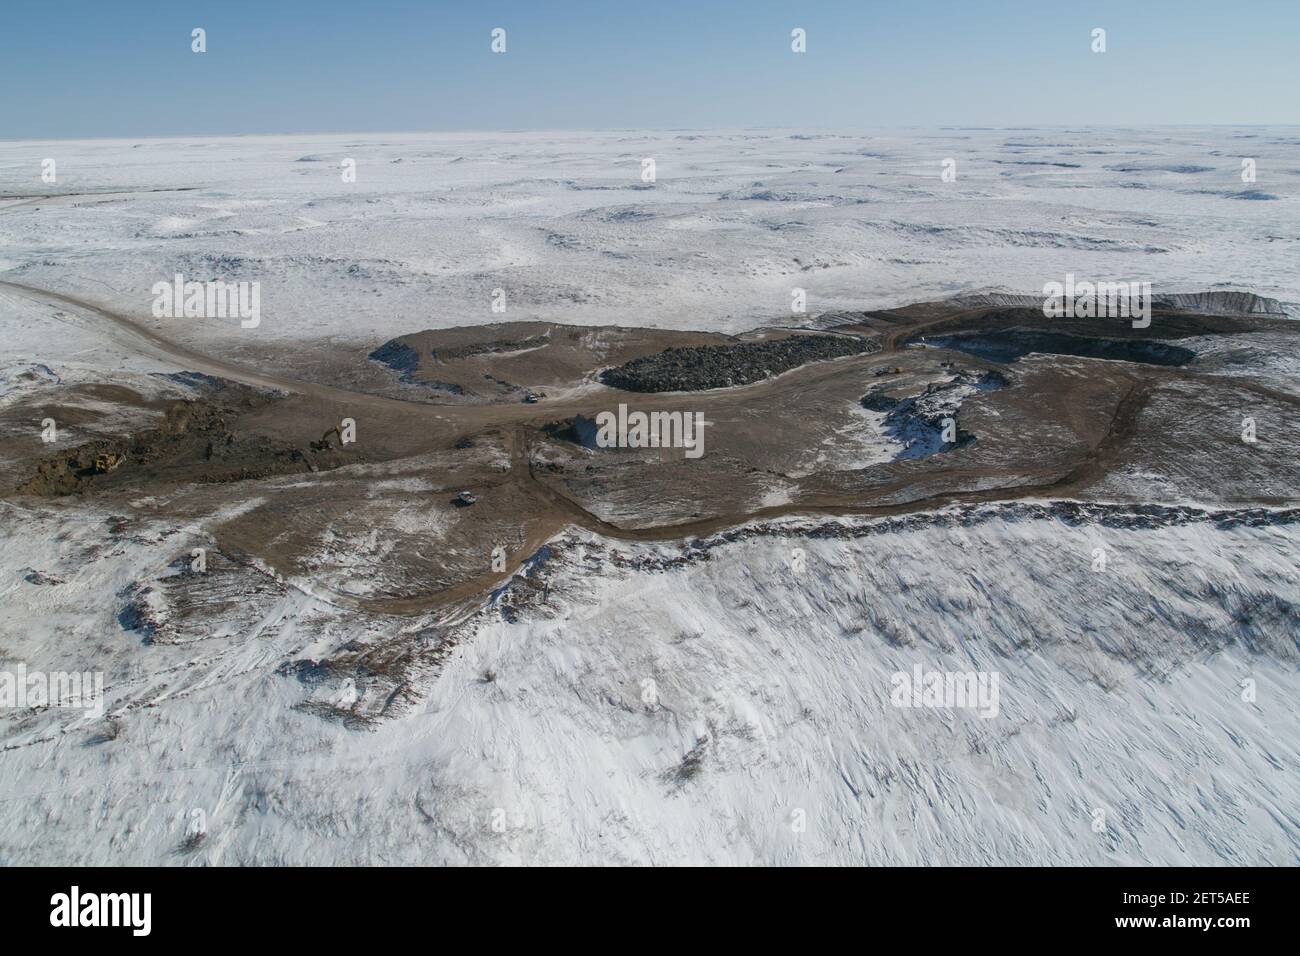 Vista aérea de uno de los pozos de grava utilizados para construir la autopista Inuvik-Tuktoyaktuk, Territorios del Noroeste, Ártico de Canadá. Foto de stock